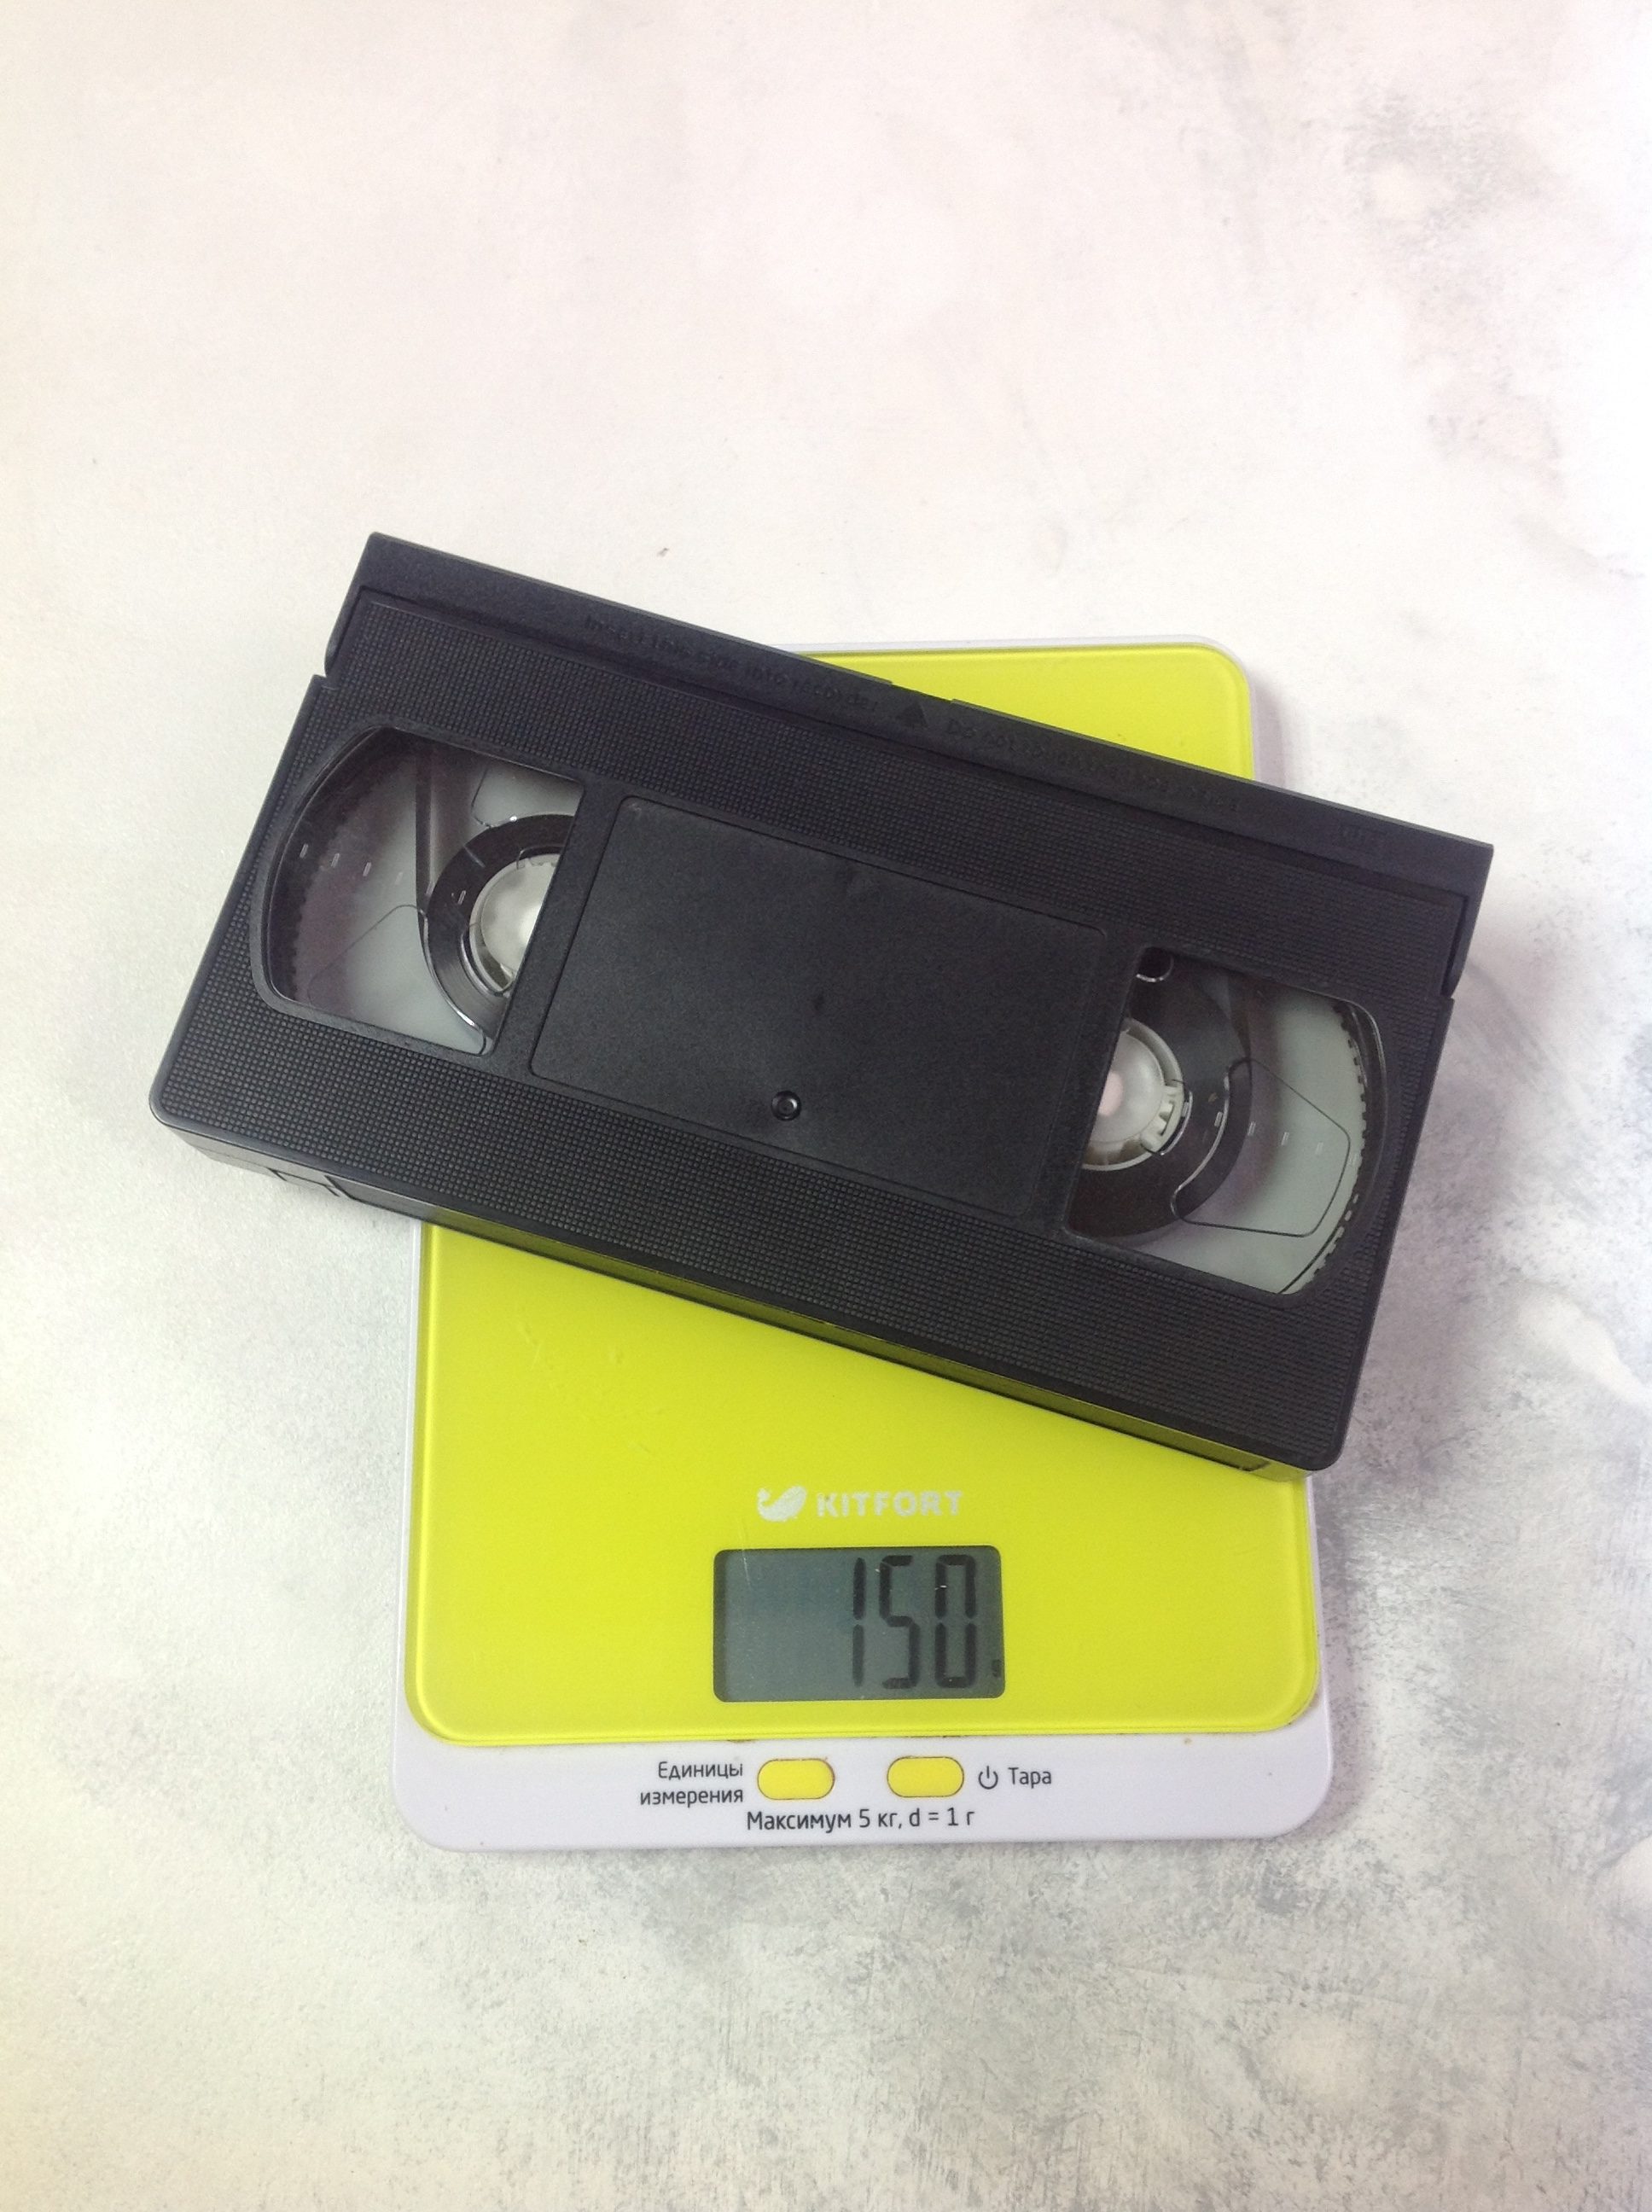 Сколько весит видеокассета?